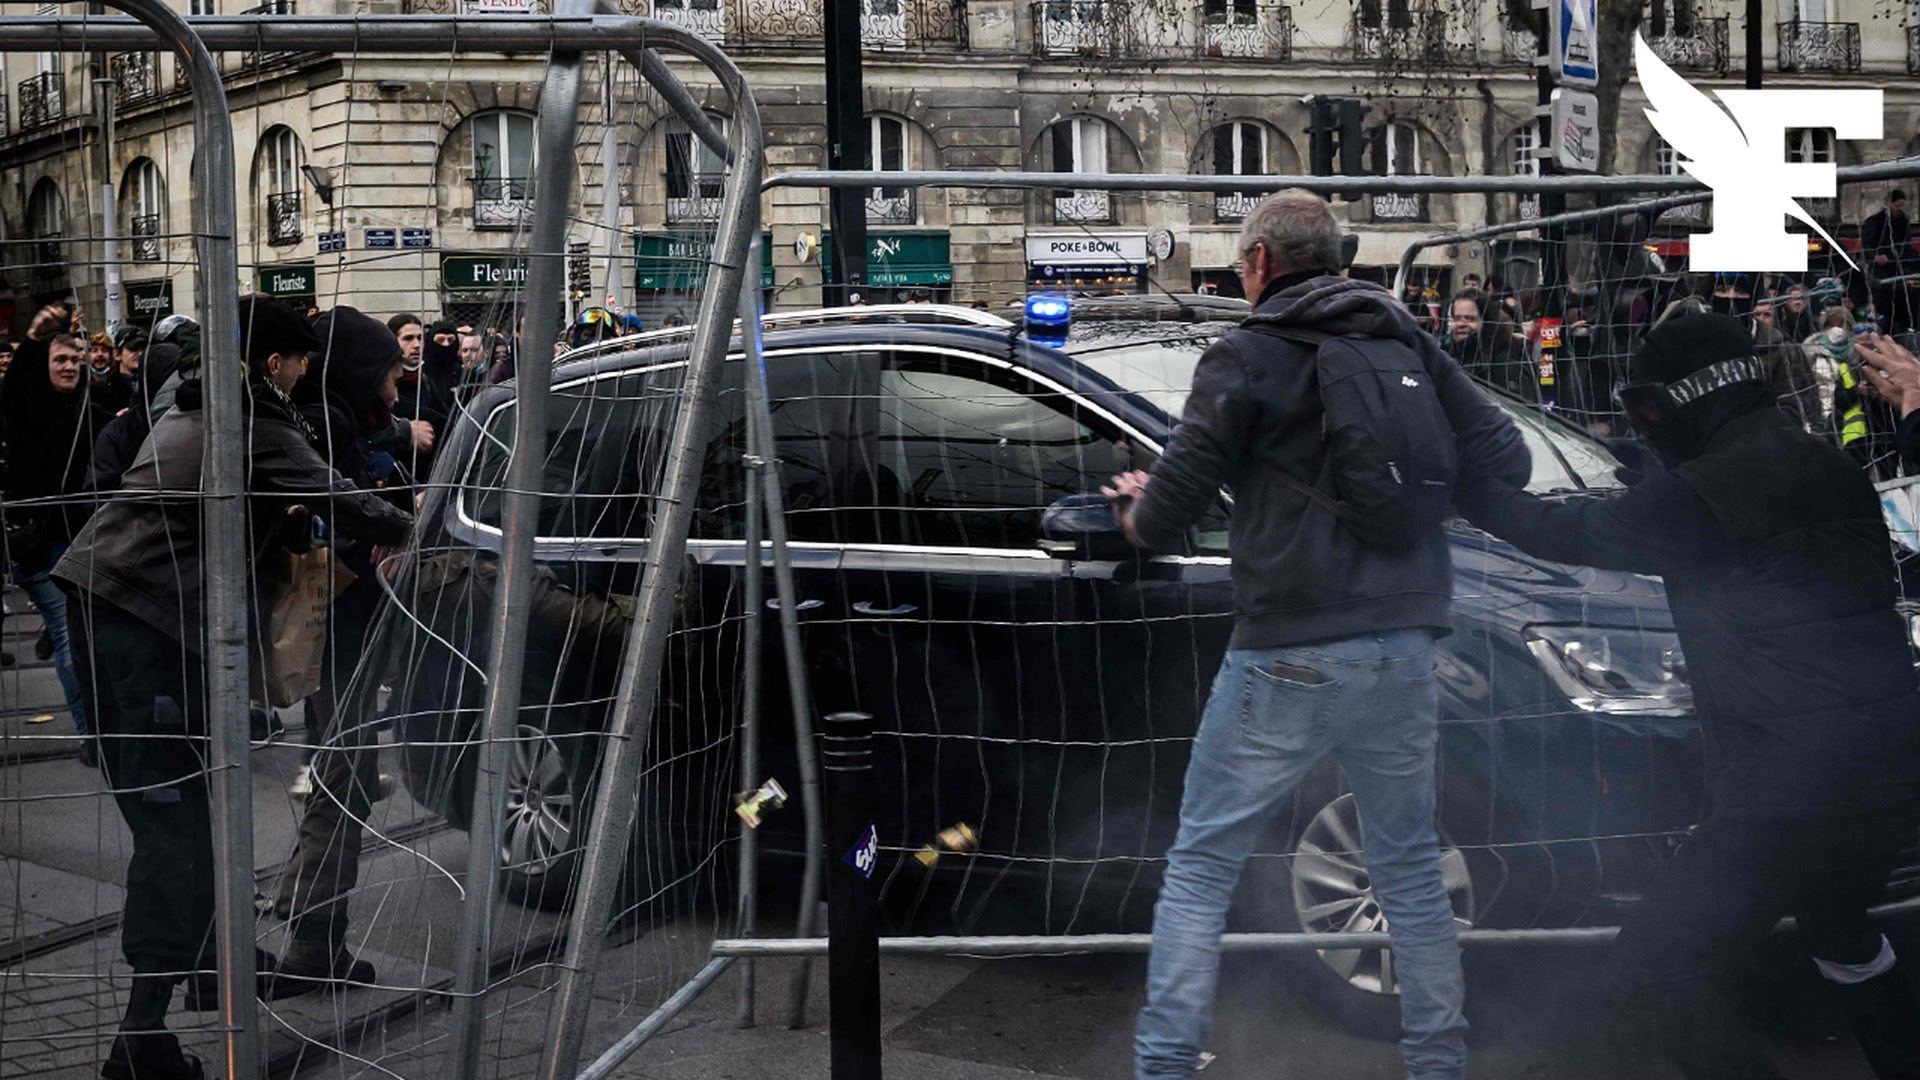 Réforme des retraites: à Nantes, des gendarmes forcent un barrage de manifestants pour éviter un drame